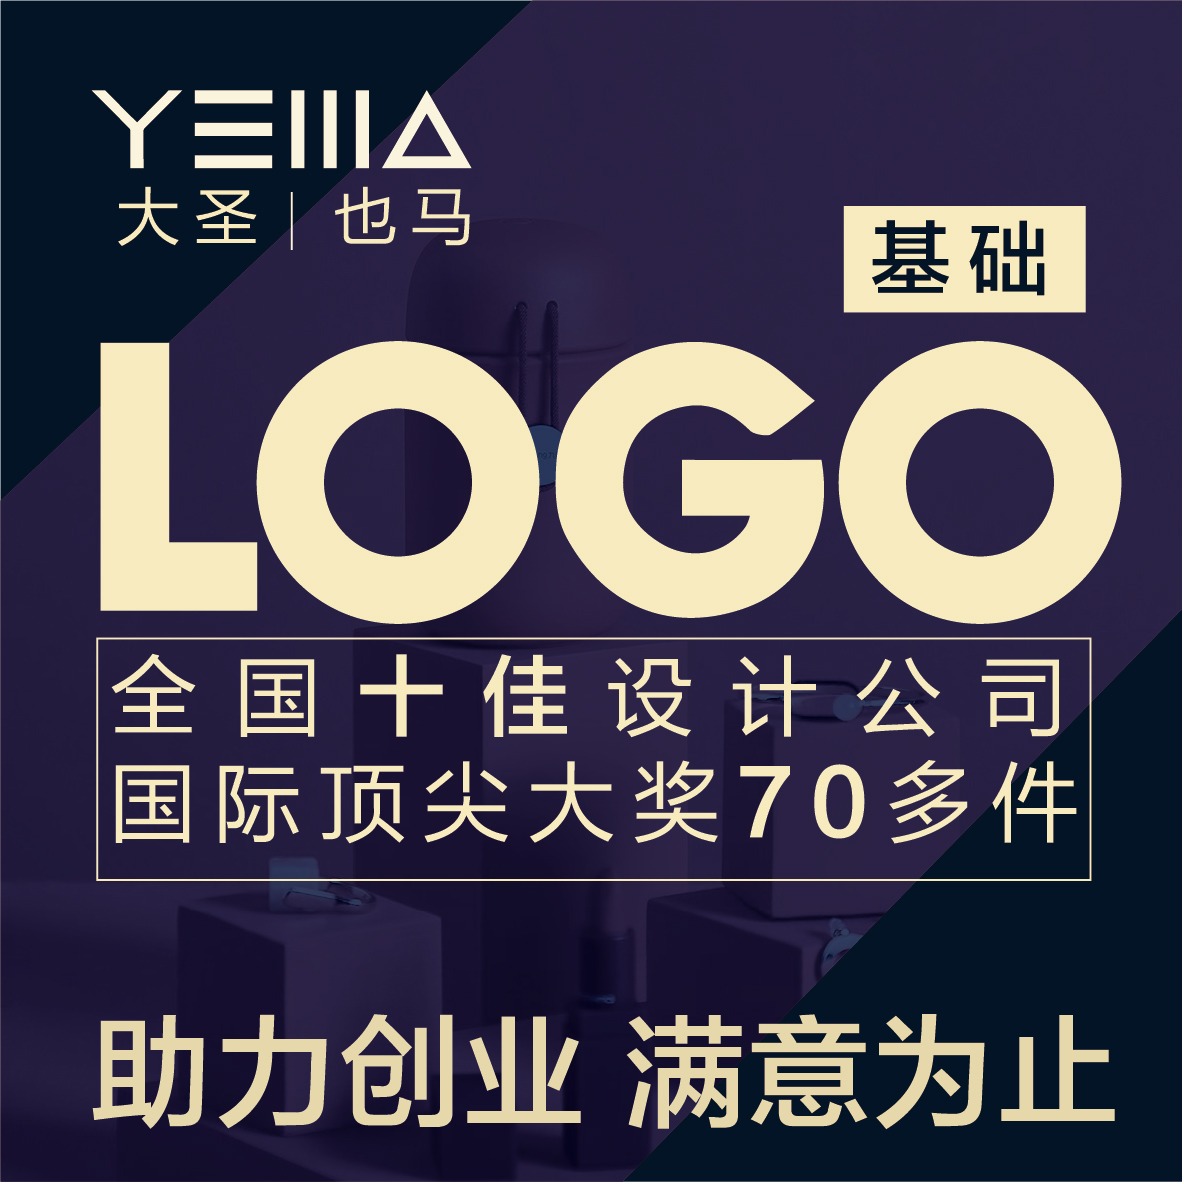 【食品饮料】品牌全案 LOGO+VI20项  含促销物料设计